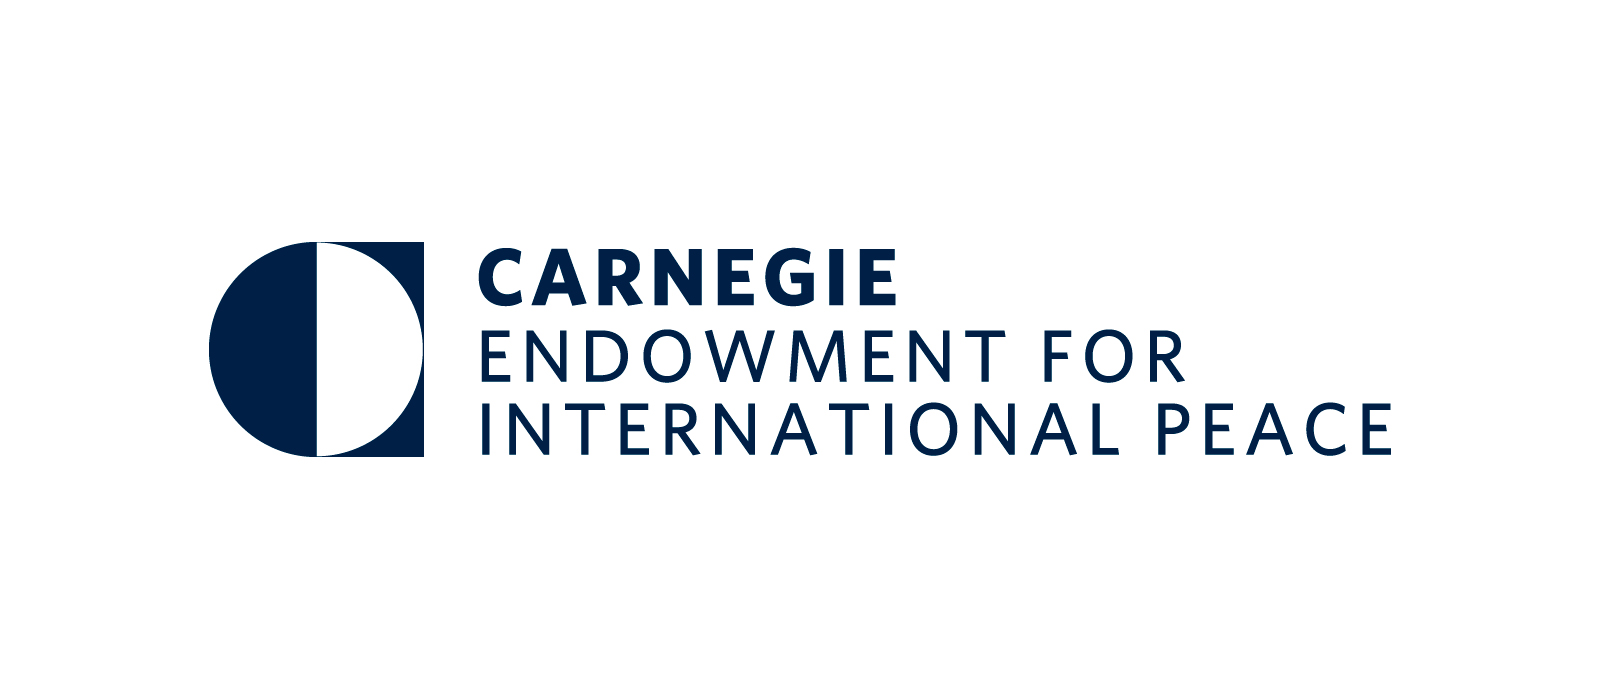 Фонд Карнеги за Международный мир. Фонд Карнеги логотип. Фонд Карнеги в США. Центр Карнеги.